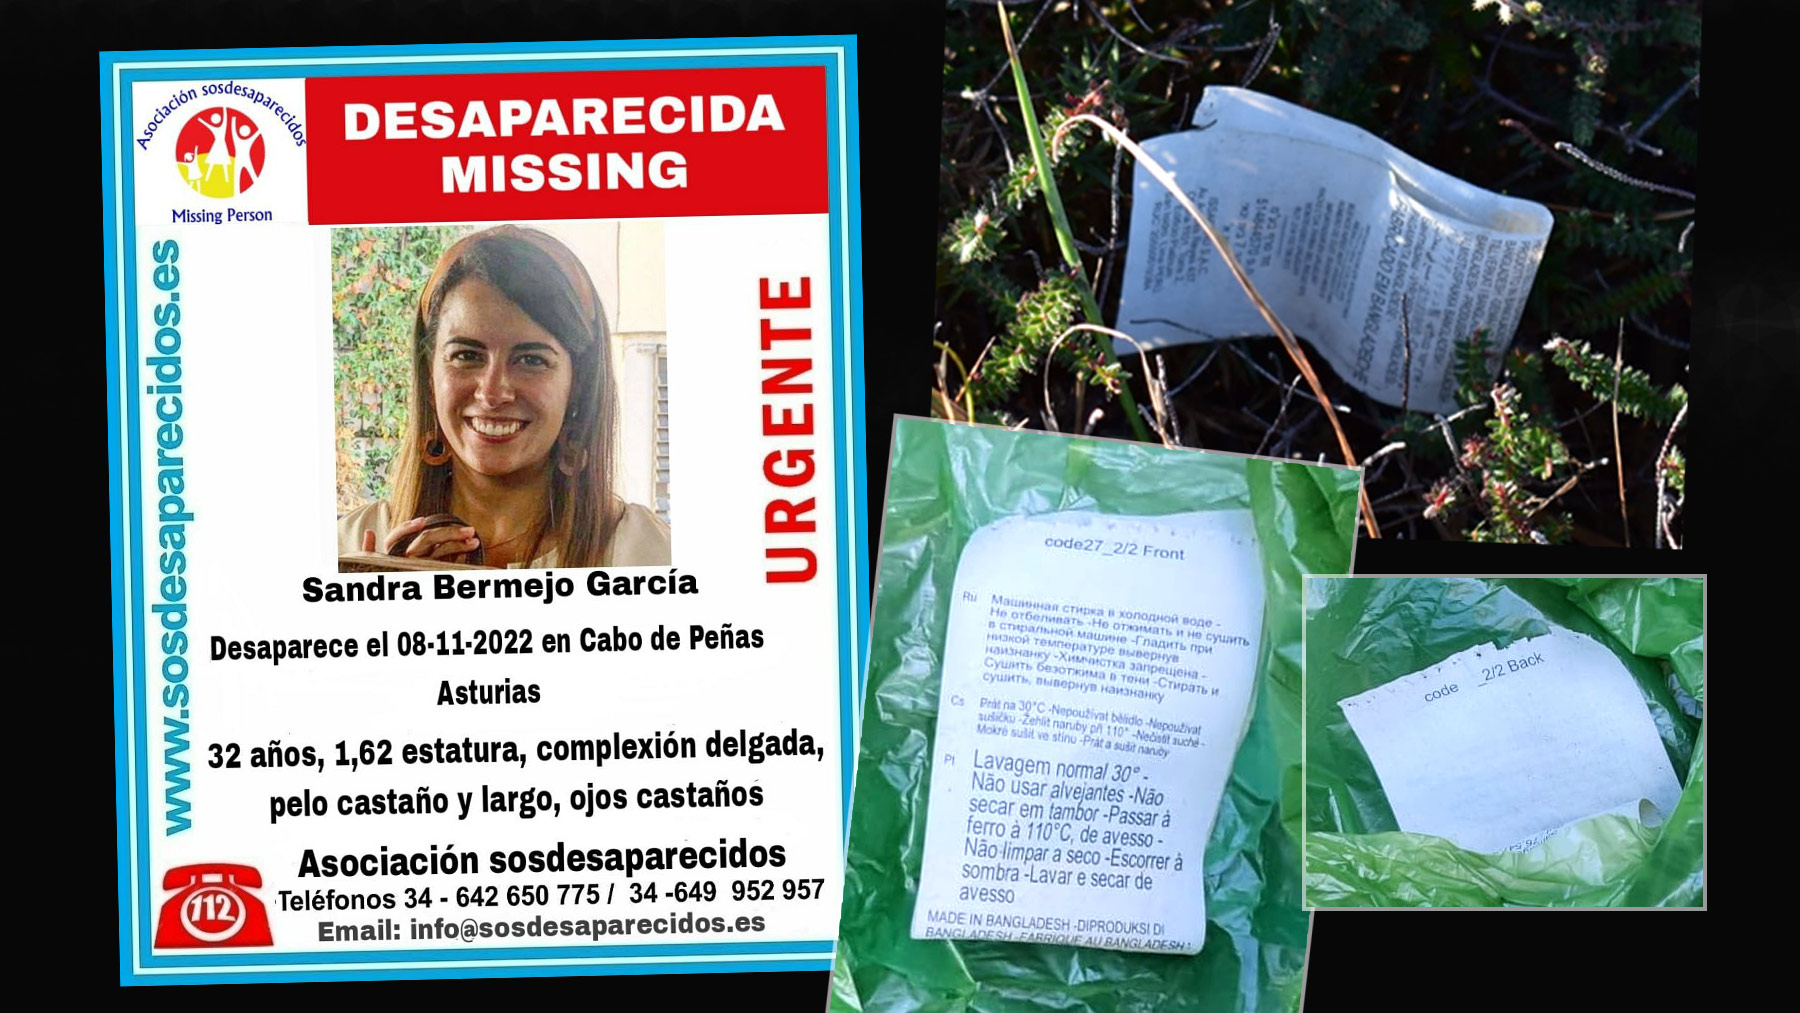 Investigan la relación de la desaparecida Sandra Bermejo con grupos esotéricos